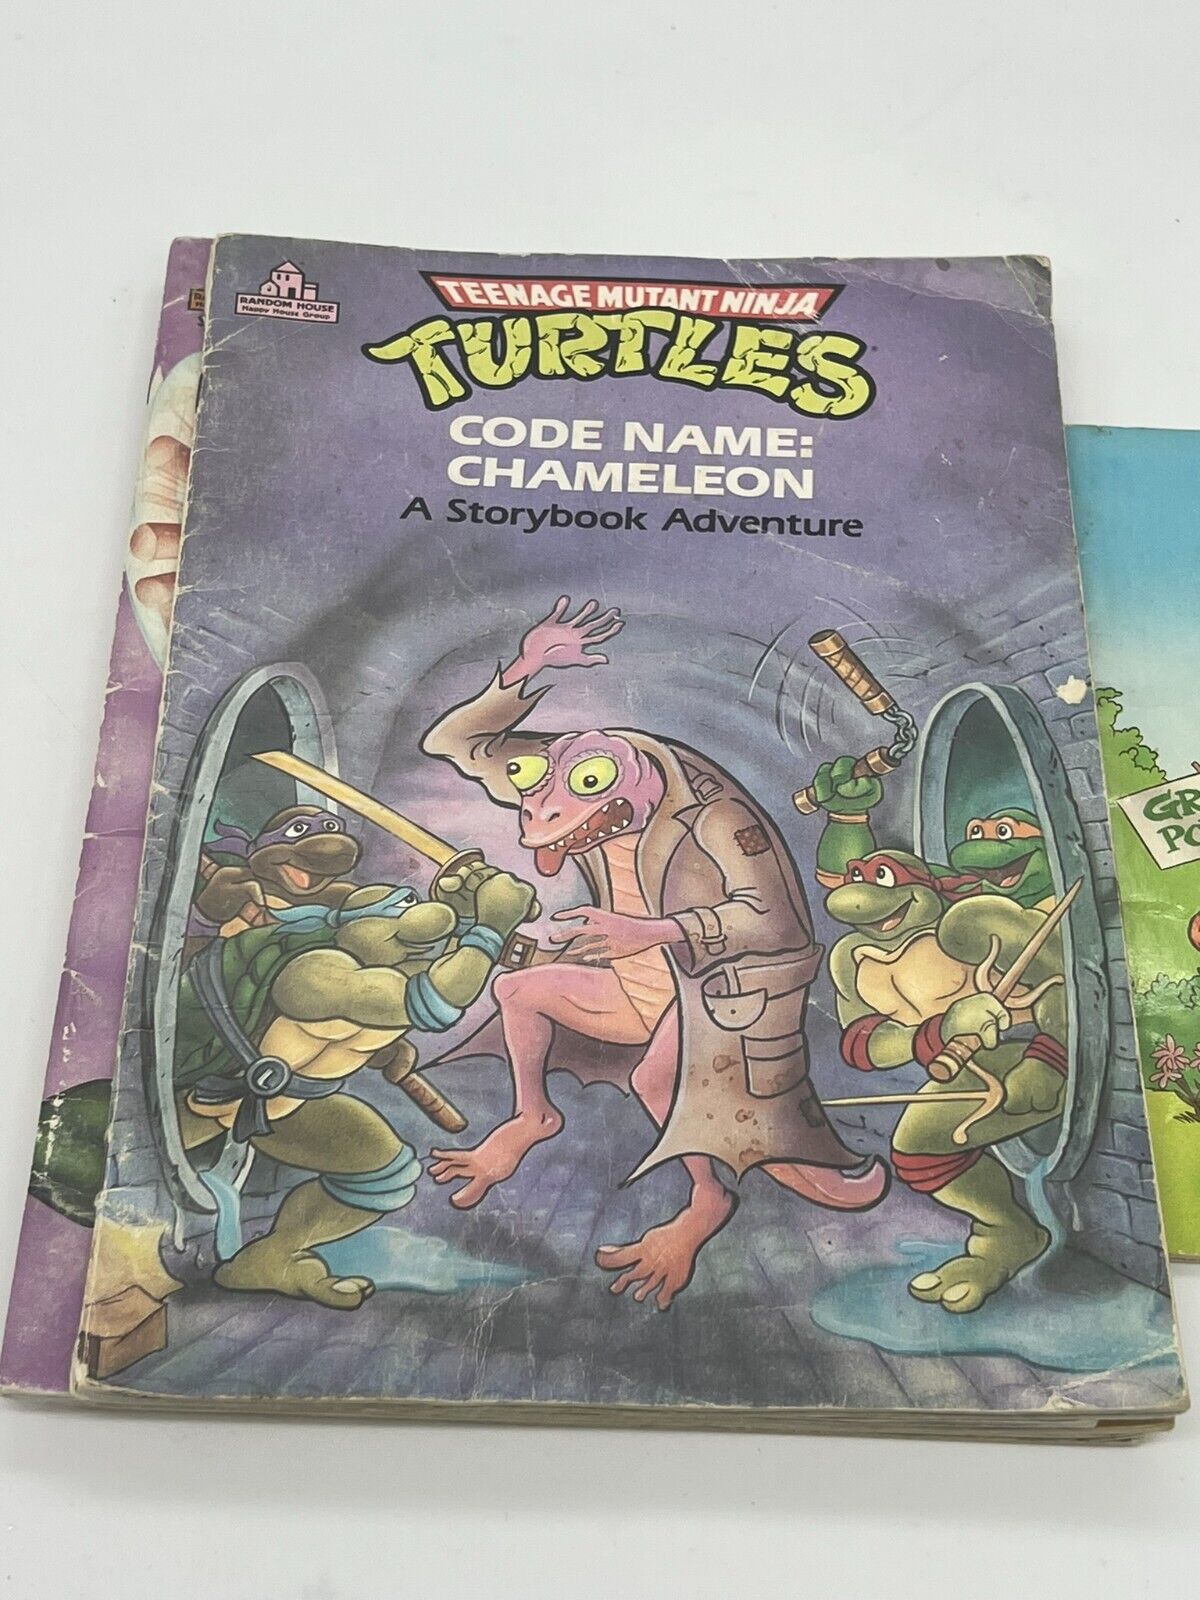 Lot of 5 Teenage Mutant Ninja Turtles TMNT A Story book